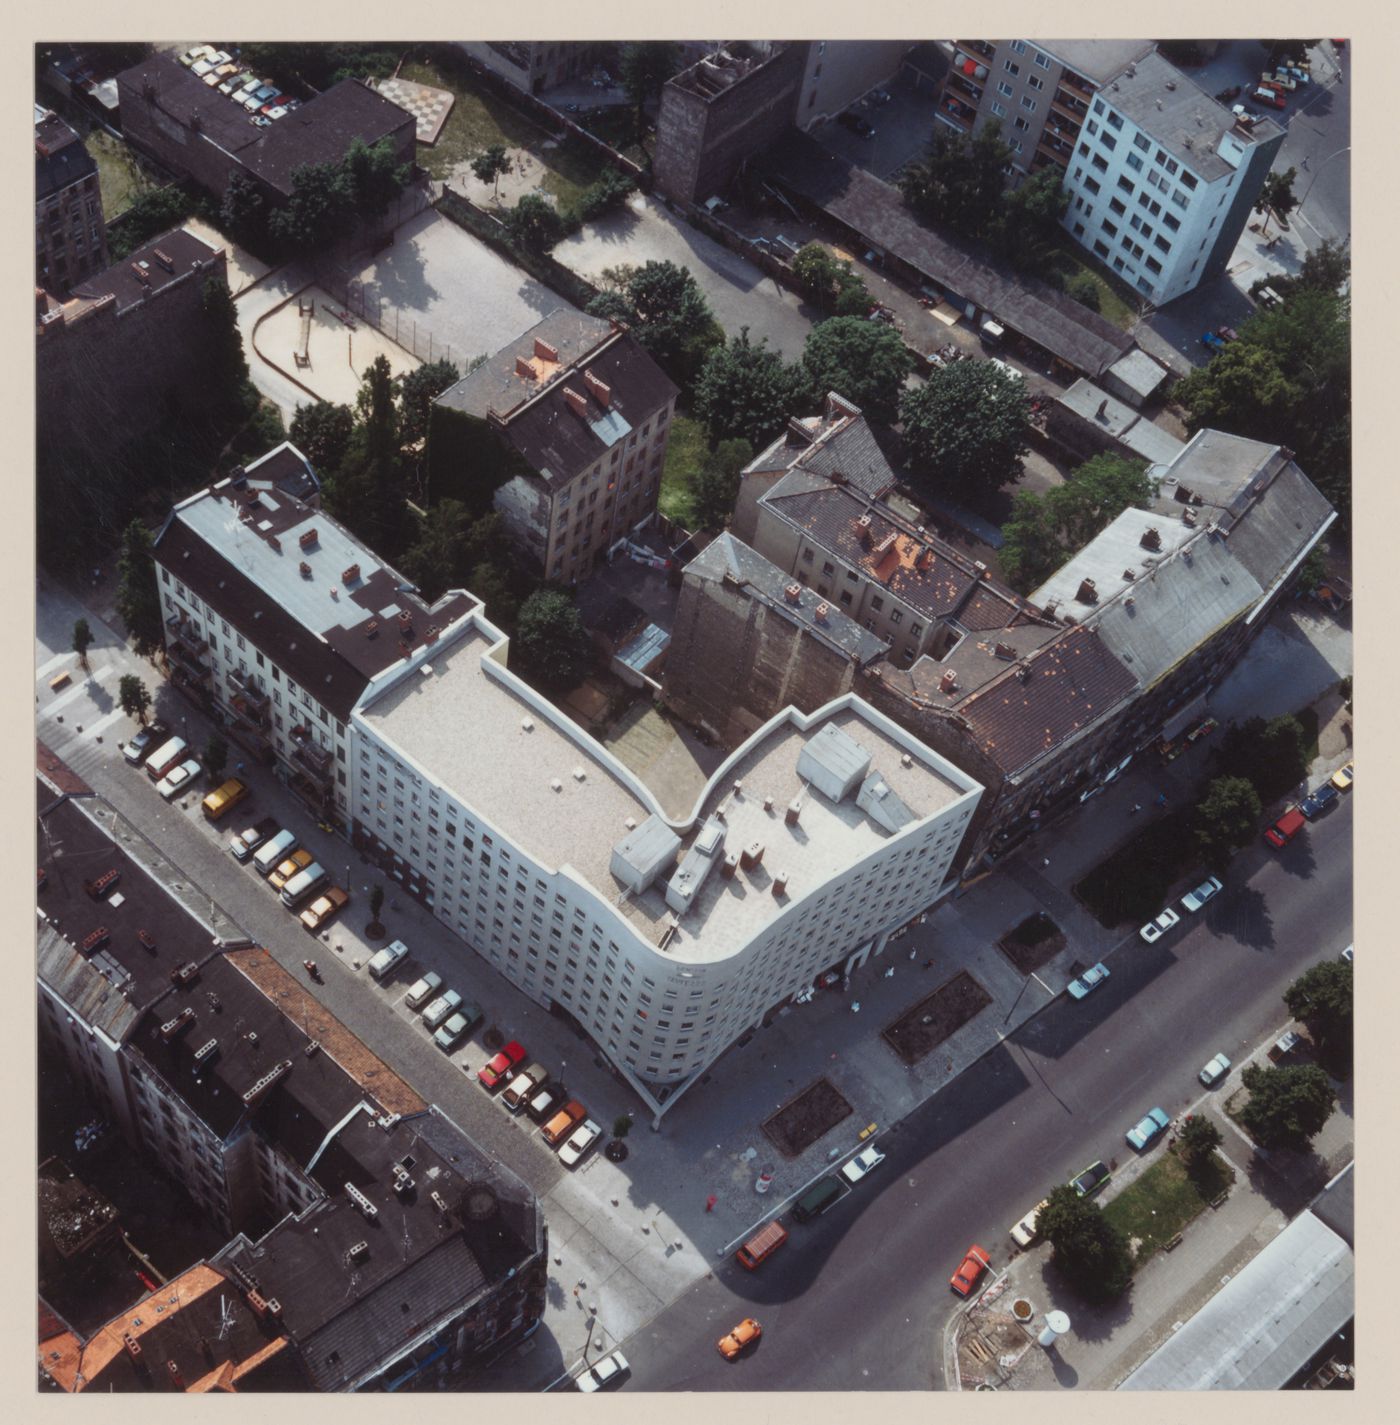 Aerial view of Edificio de Apartamentos Bonjour Tristesse [Bonjour Tristesse residential complex], Block 121, Berlin, Germany